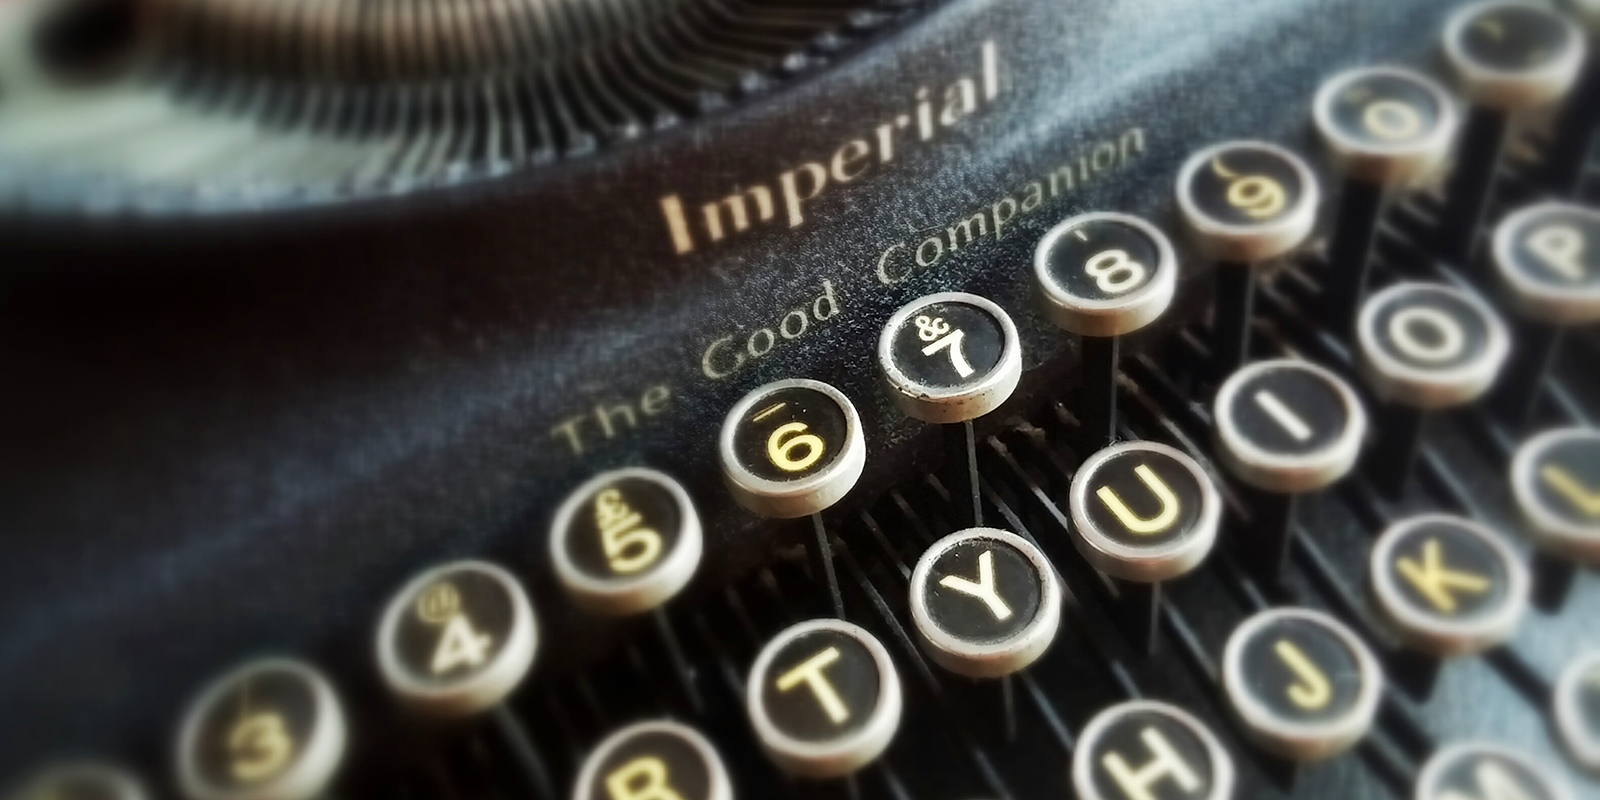 Old typewriter 03